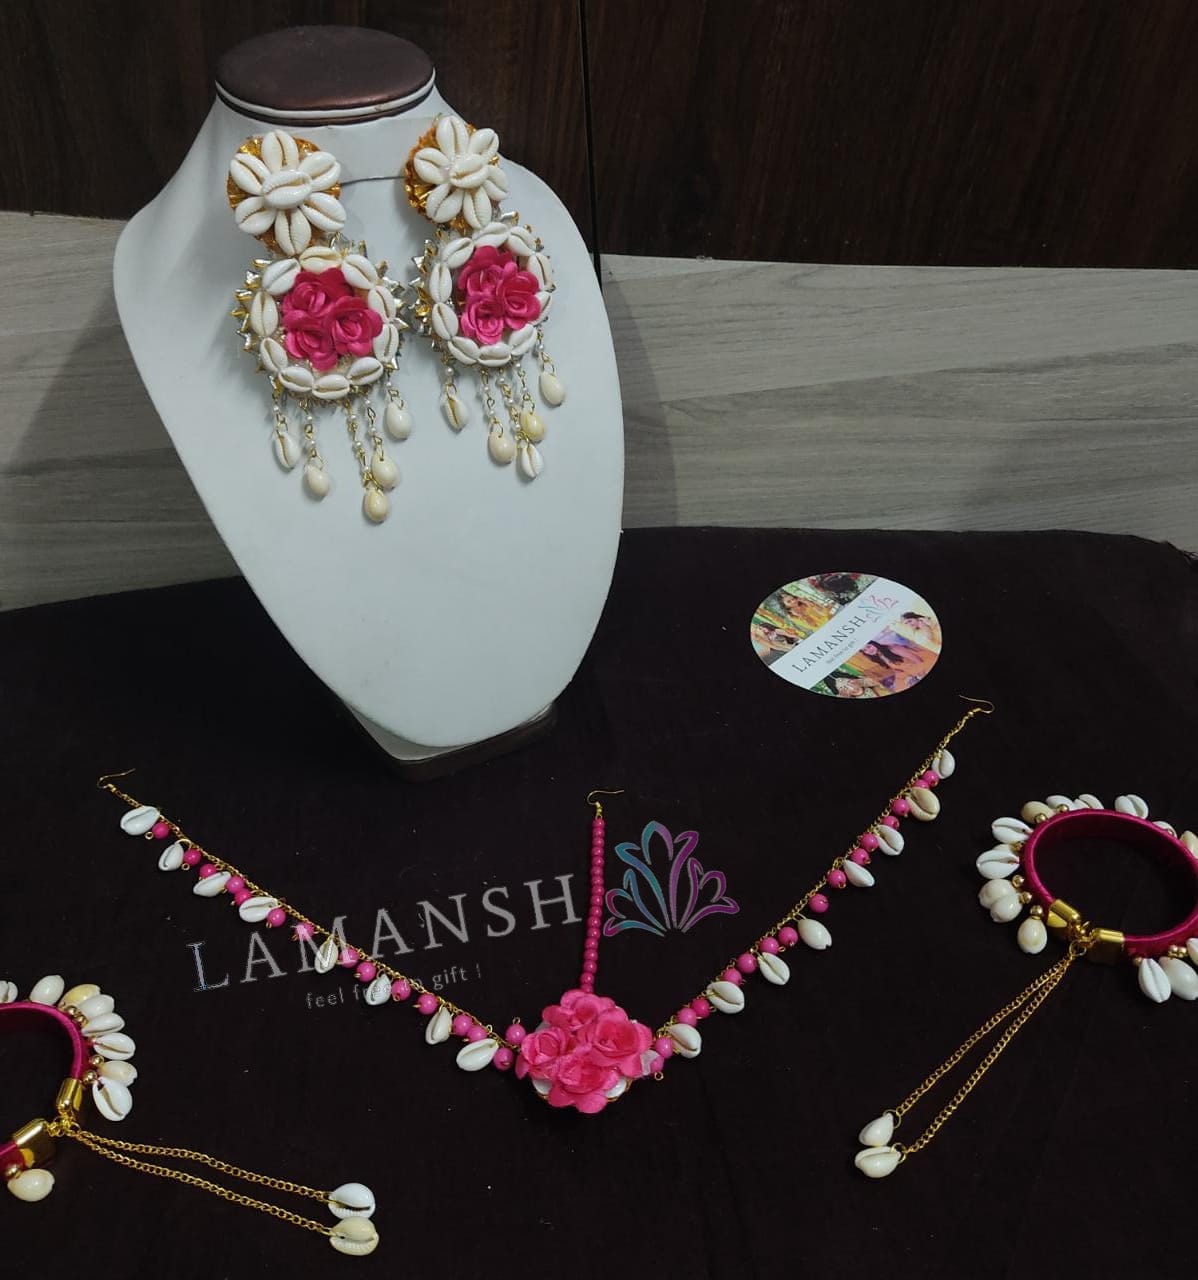 LAMANSH Flower Shell Jewellery Pink / Standard / Shells 🐚 Style Lamansh® Flower Jewellery Set With Shells Earrings & Bracelet set